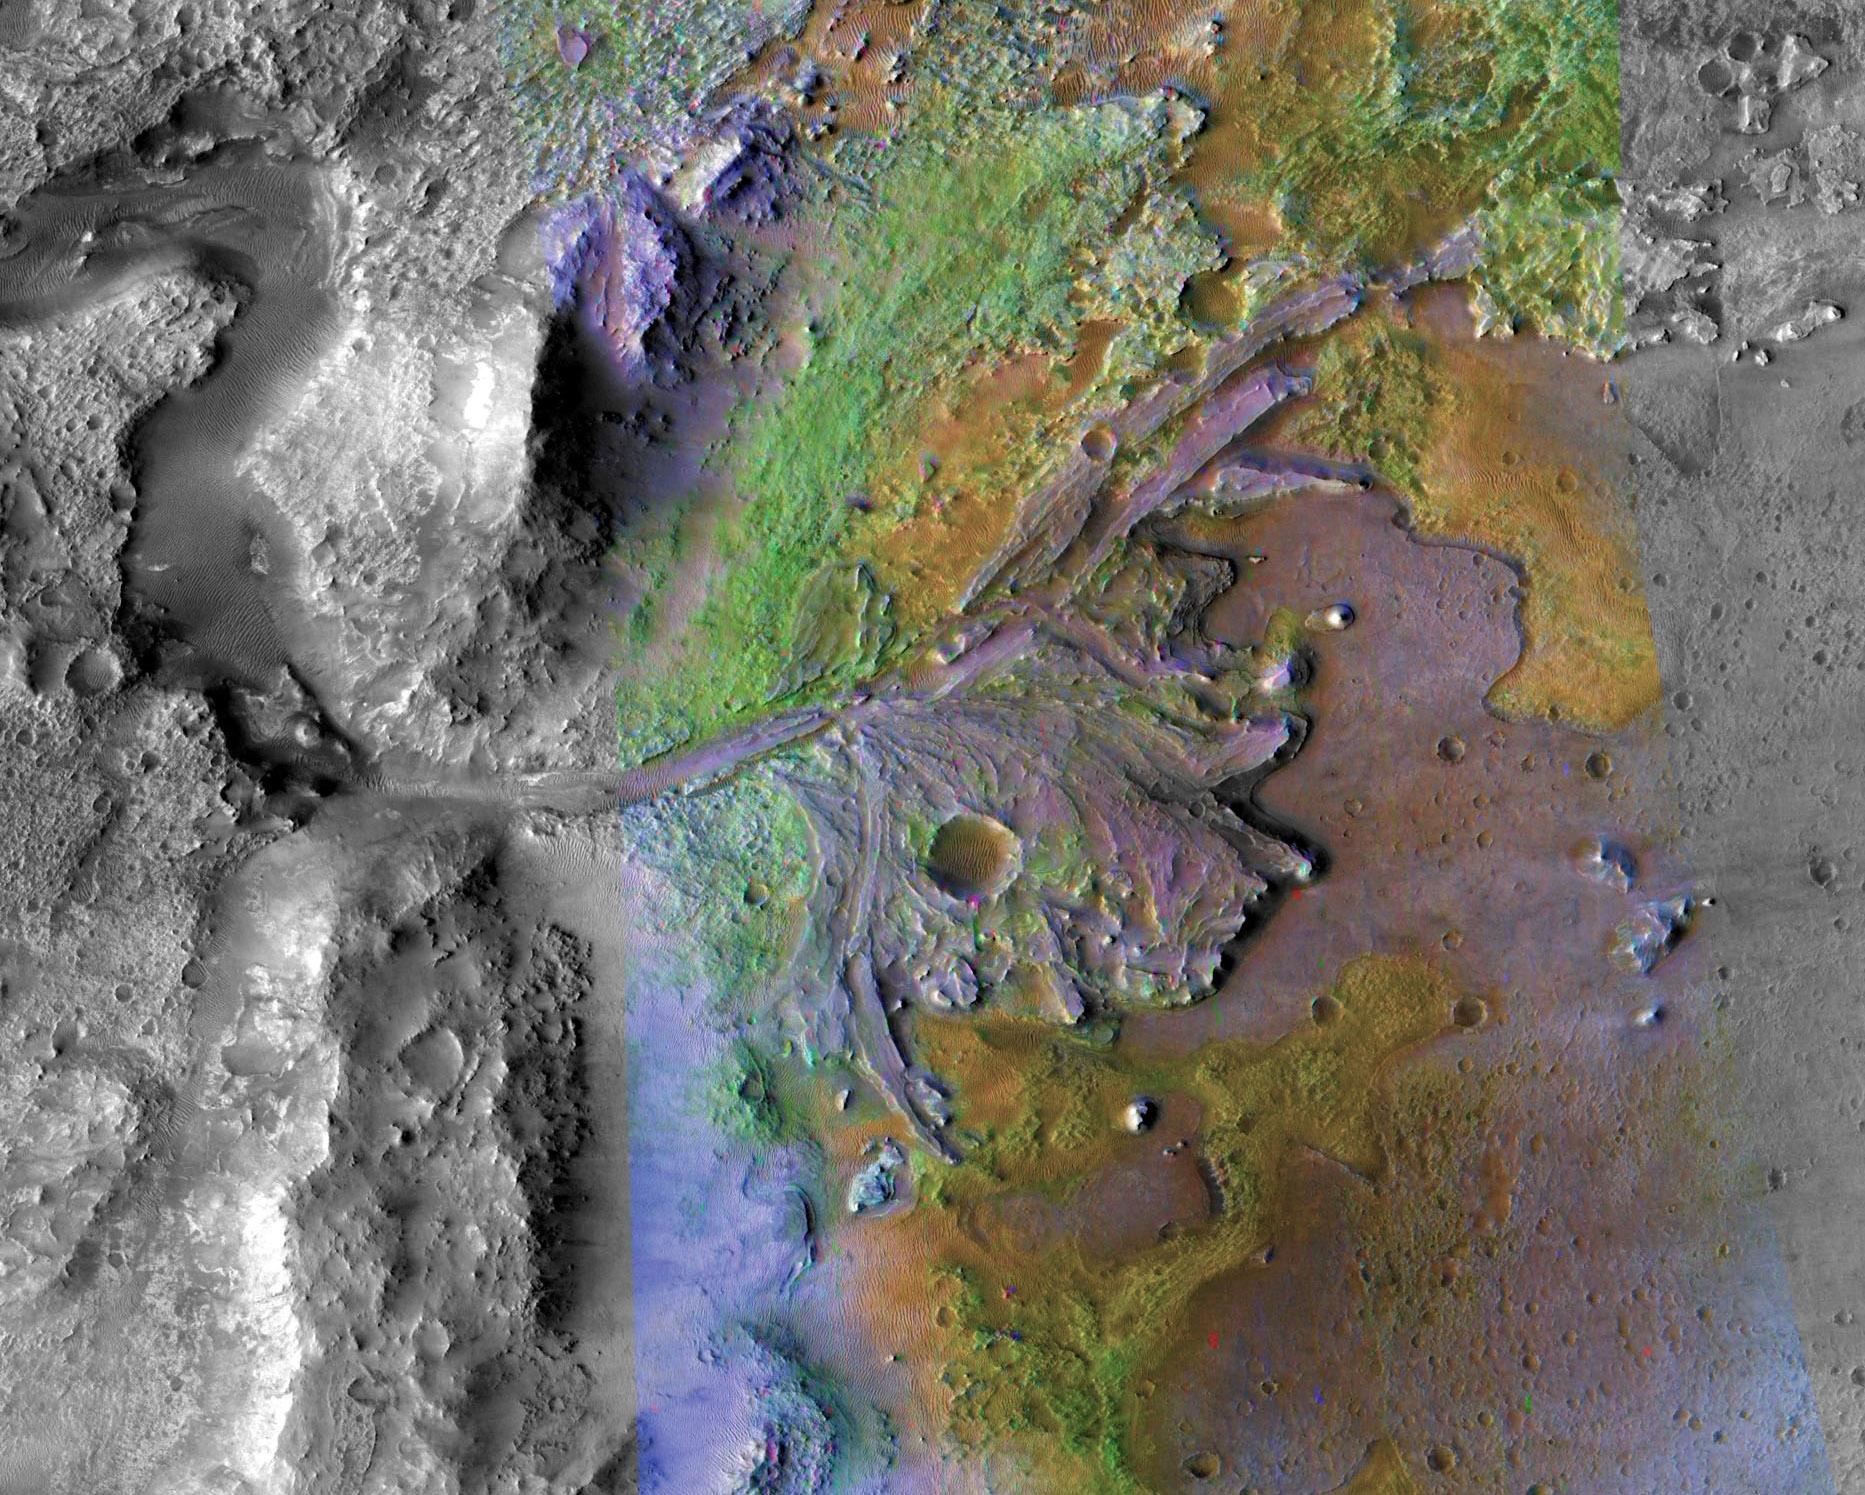 Это изображение кратера Джезеро на Марсе, места посадки миссии НАСА Марс-2020, было сделано приборами орбитального аппарата НАСА Mars Reconnaissance Orbiter.